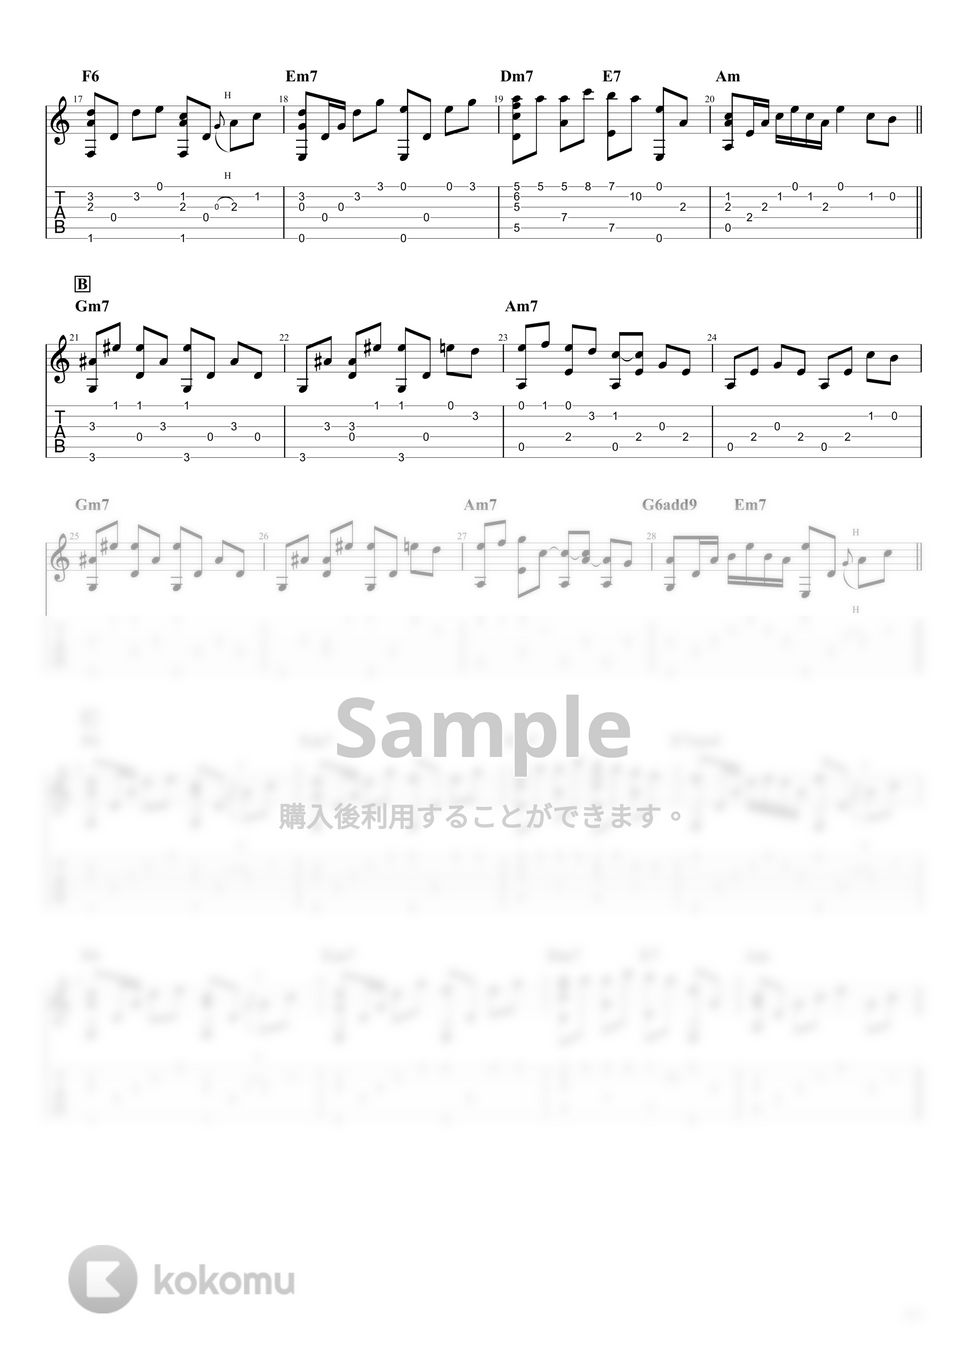 久石譲 - 風のとおり道 (ソロギター) by Shigeo Furukawa